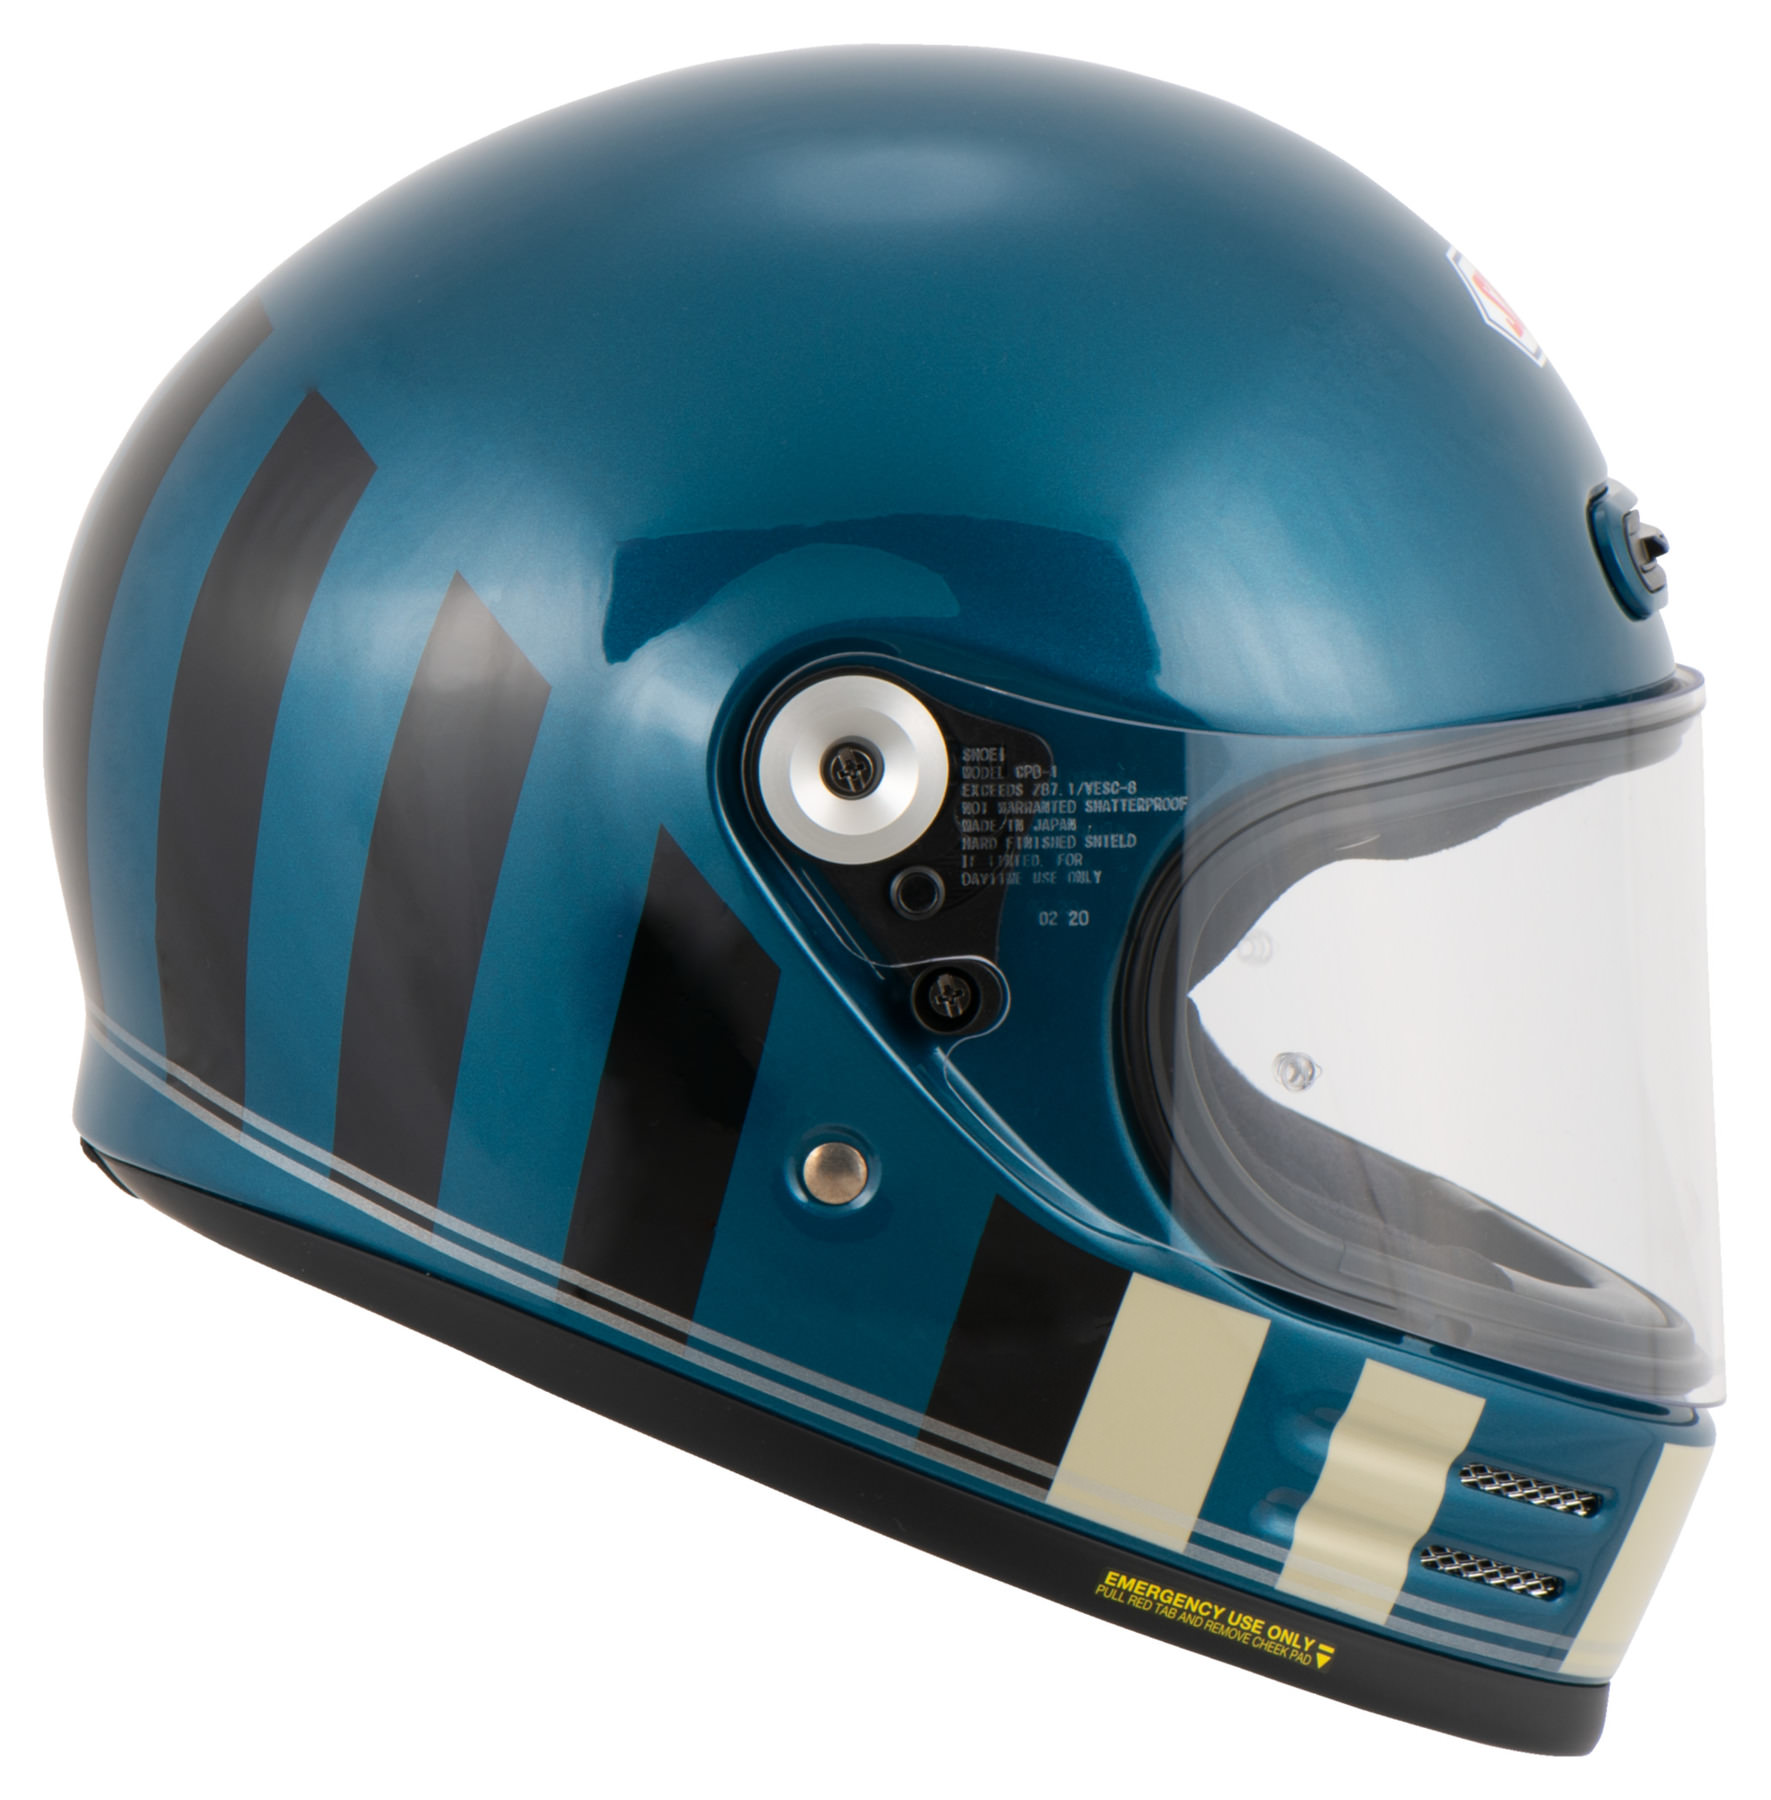 Shoei Shoei Glamster Resurrection TC-2 Full-Face Helmet